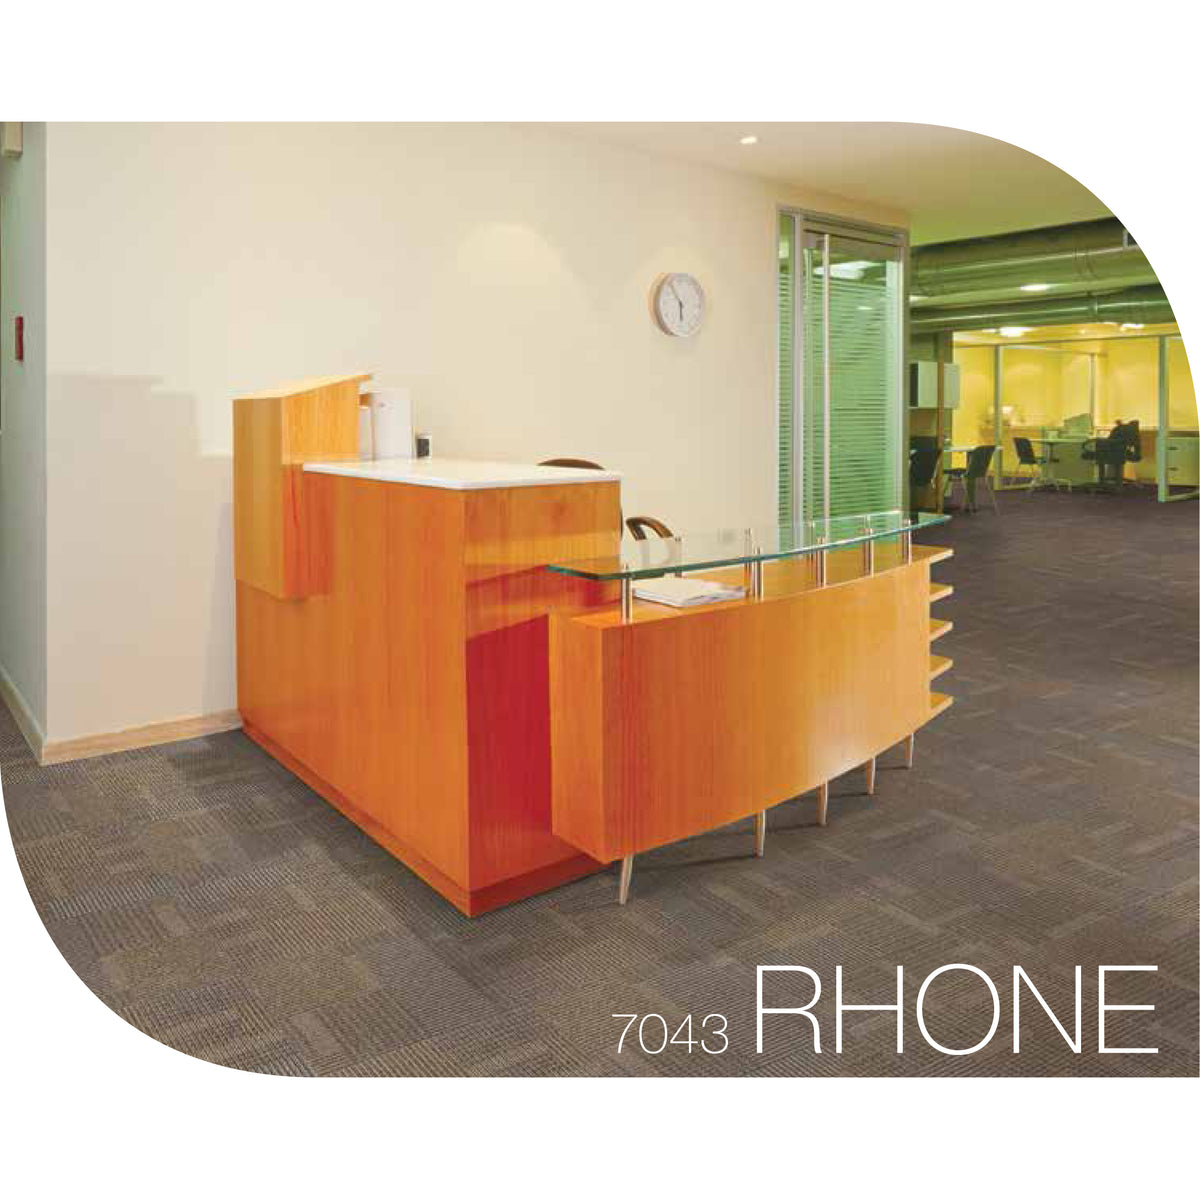 Kraus - Rhone - Carpet Tile - Room Scene